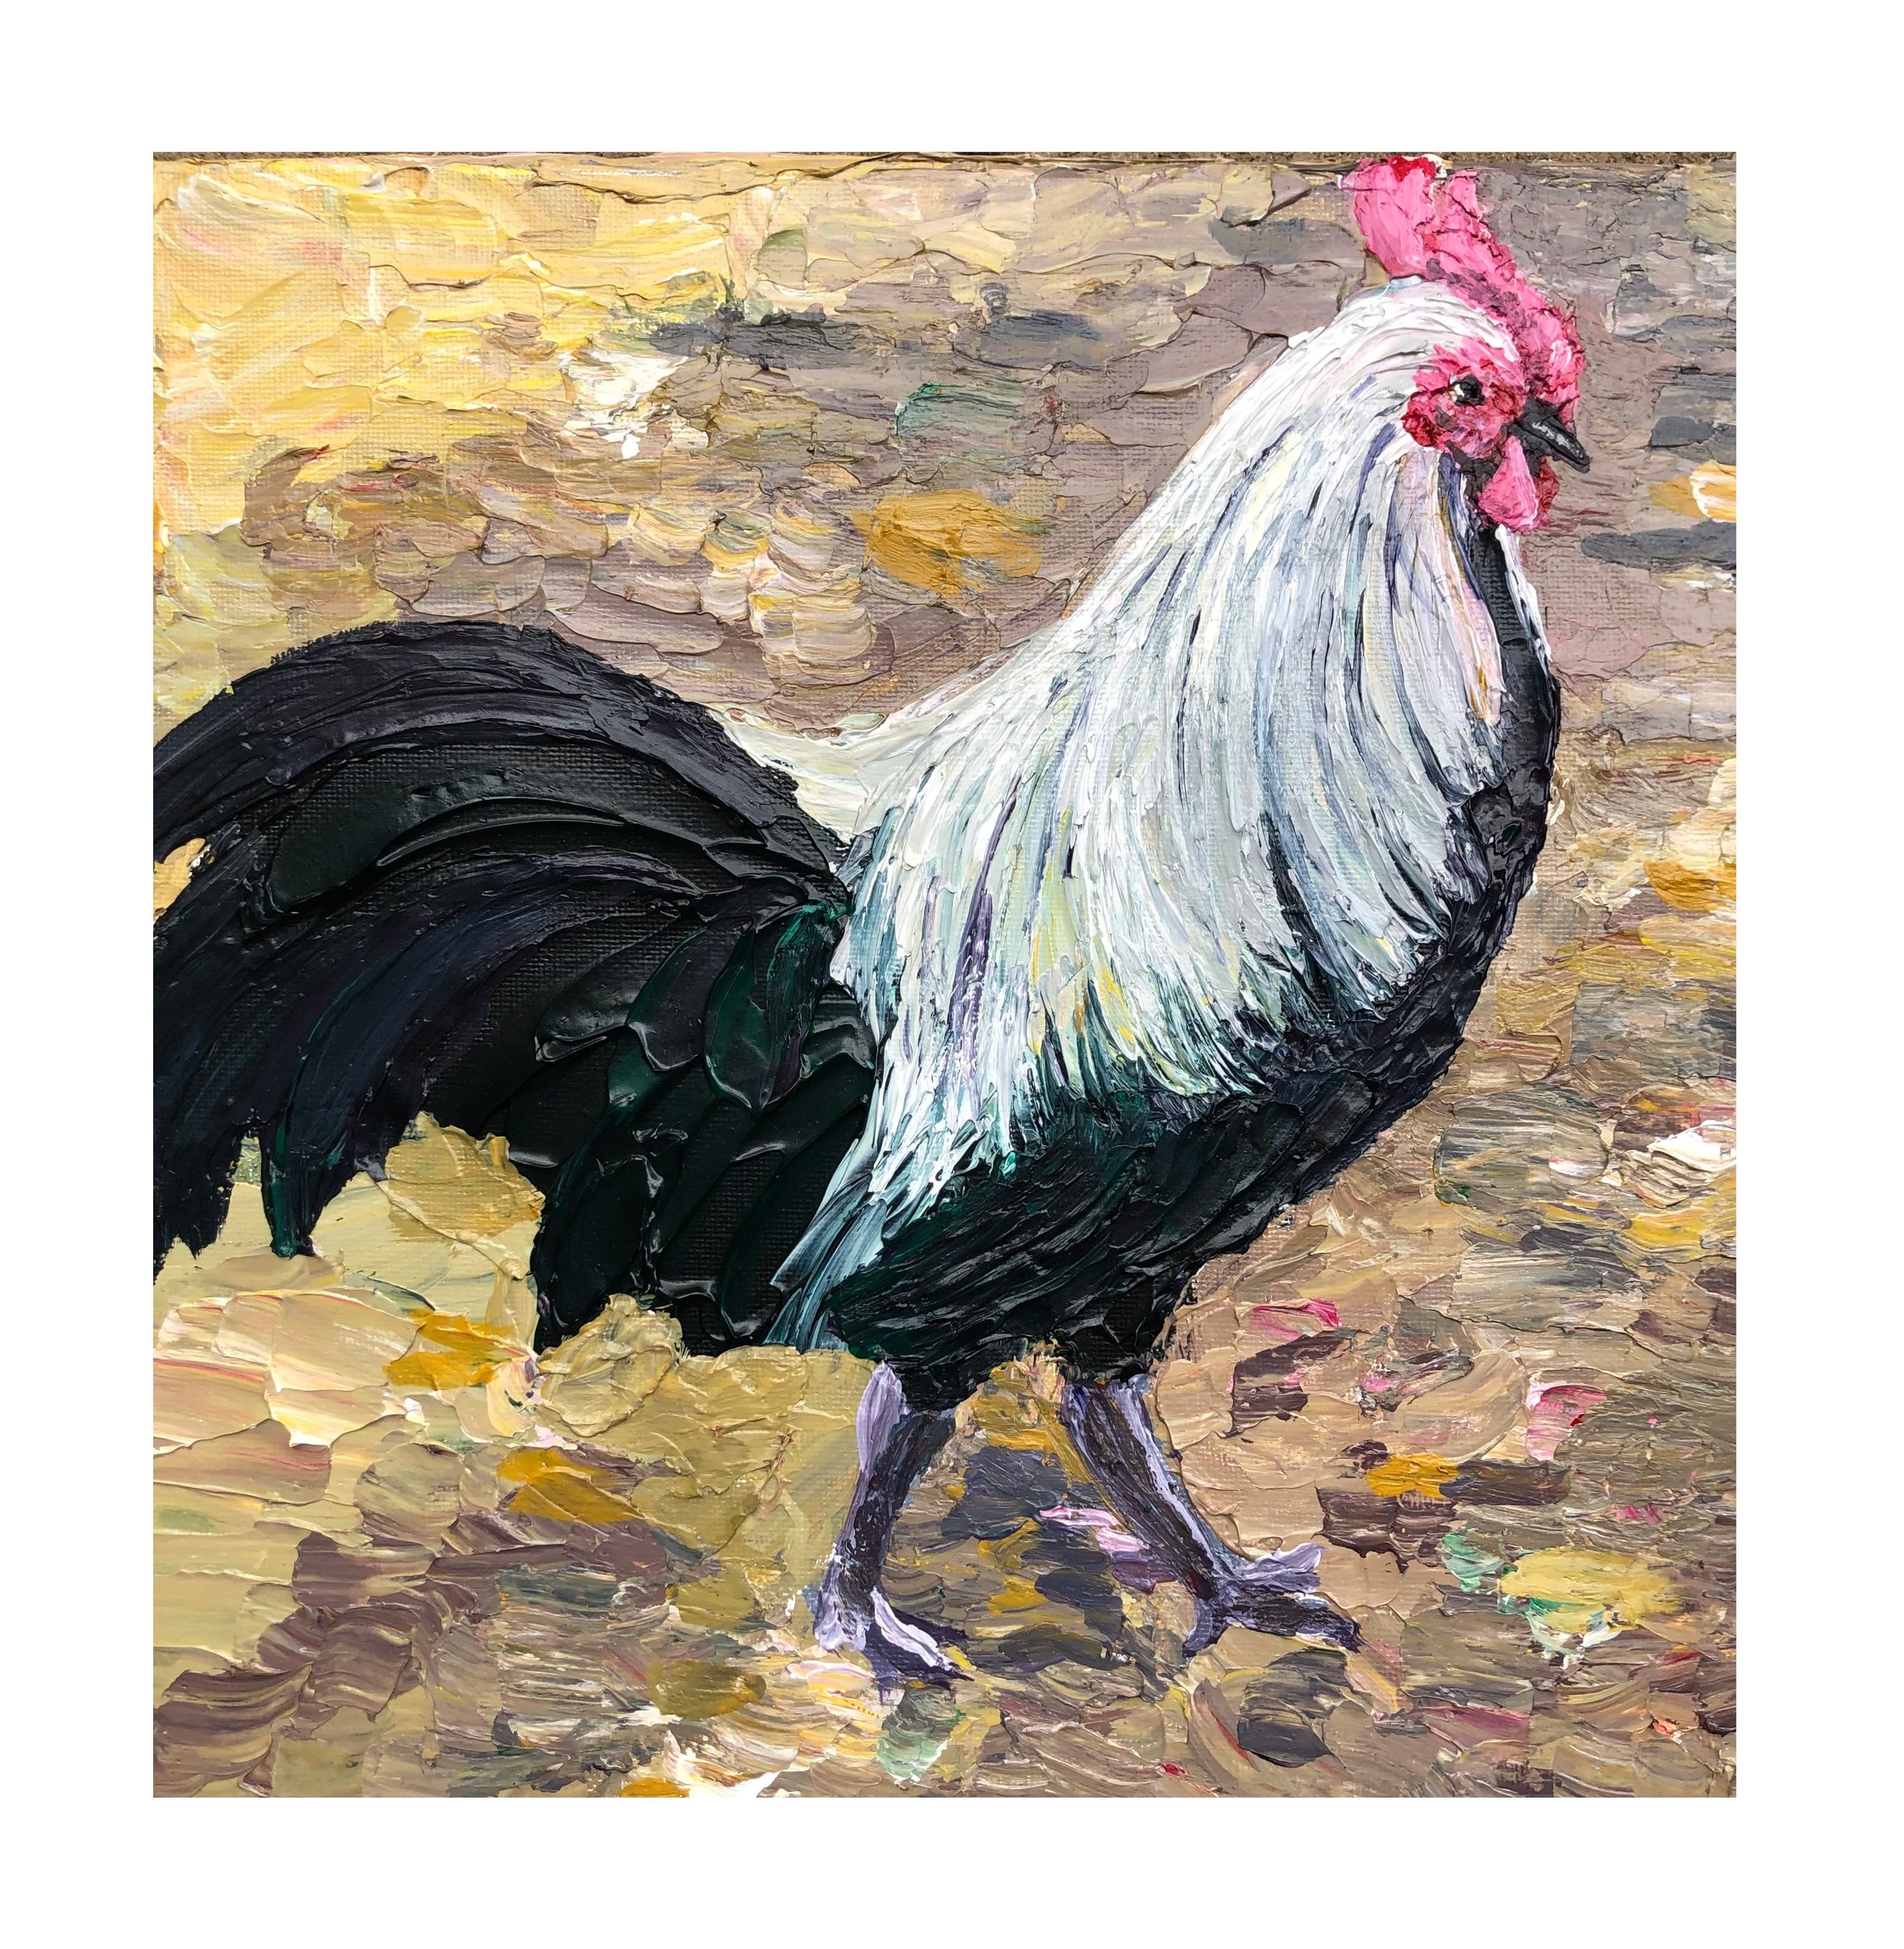 rooster.jpg